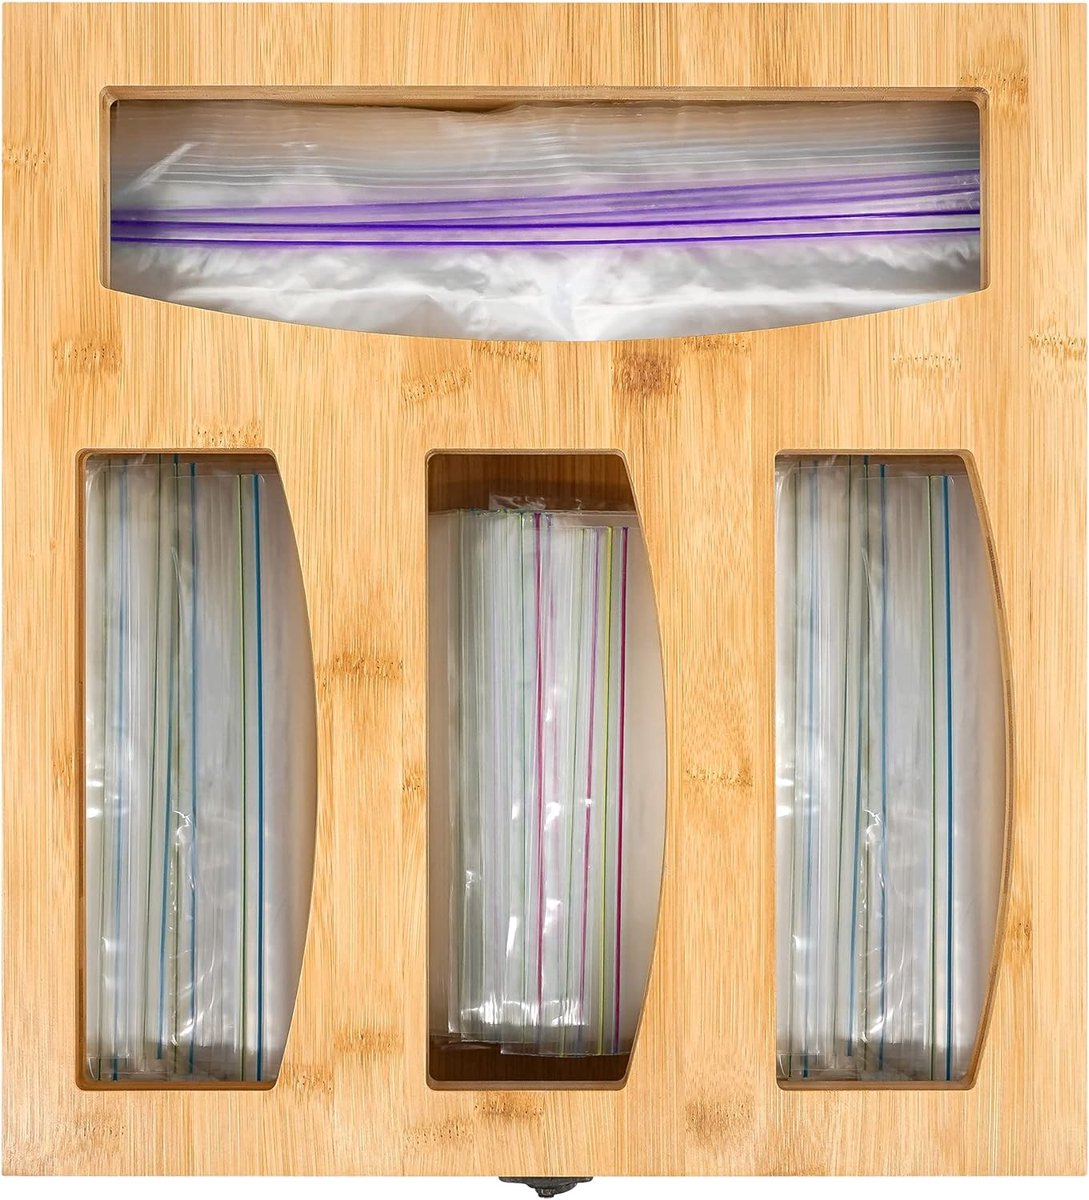 Ziplock Bag Storage Organizer - Bamboe Voedselzakken Container voor Keuken Lade Compatibel voor Gallon, Quart, Sandwich, Snack en Slider Bag